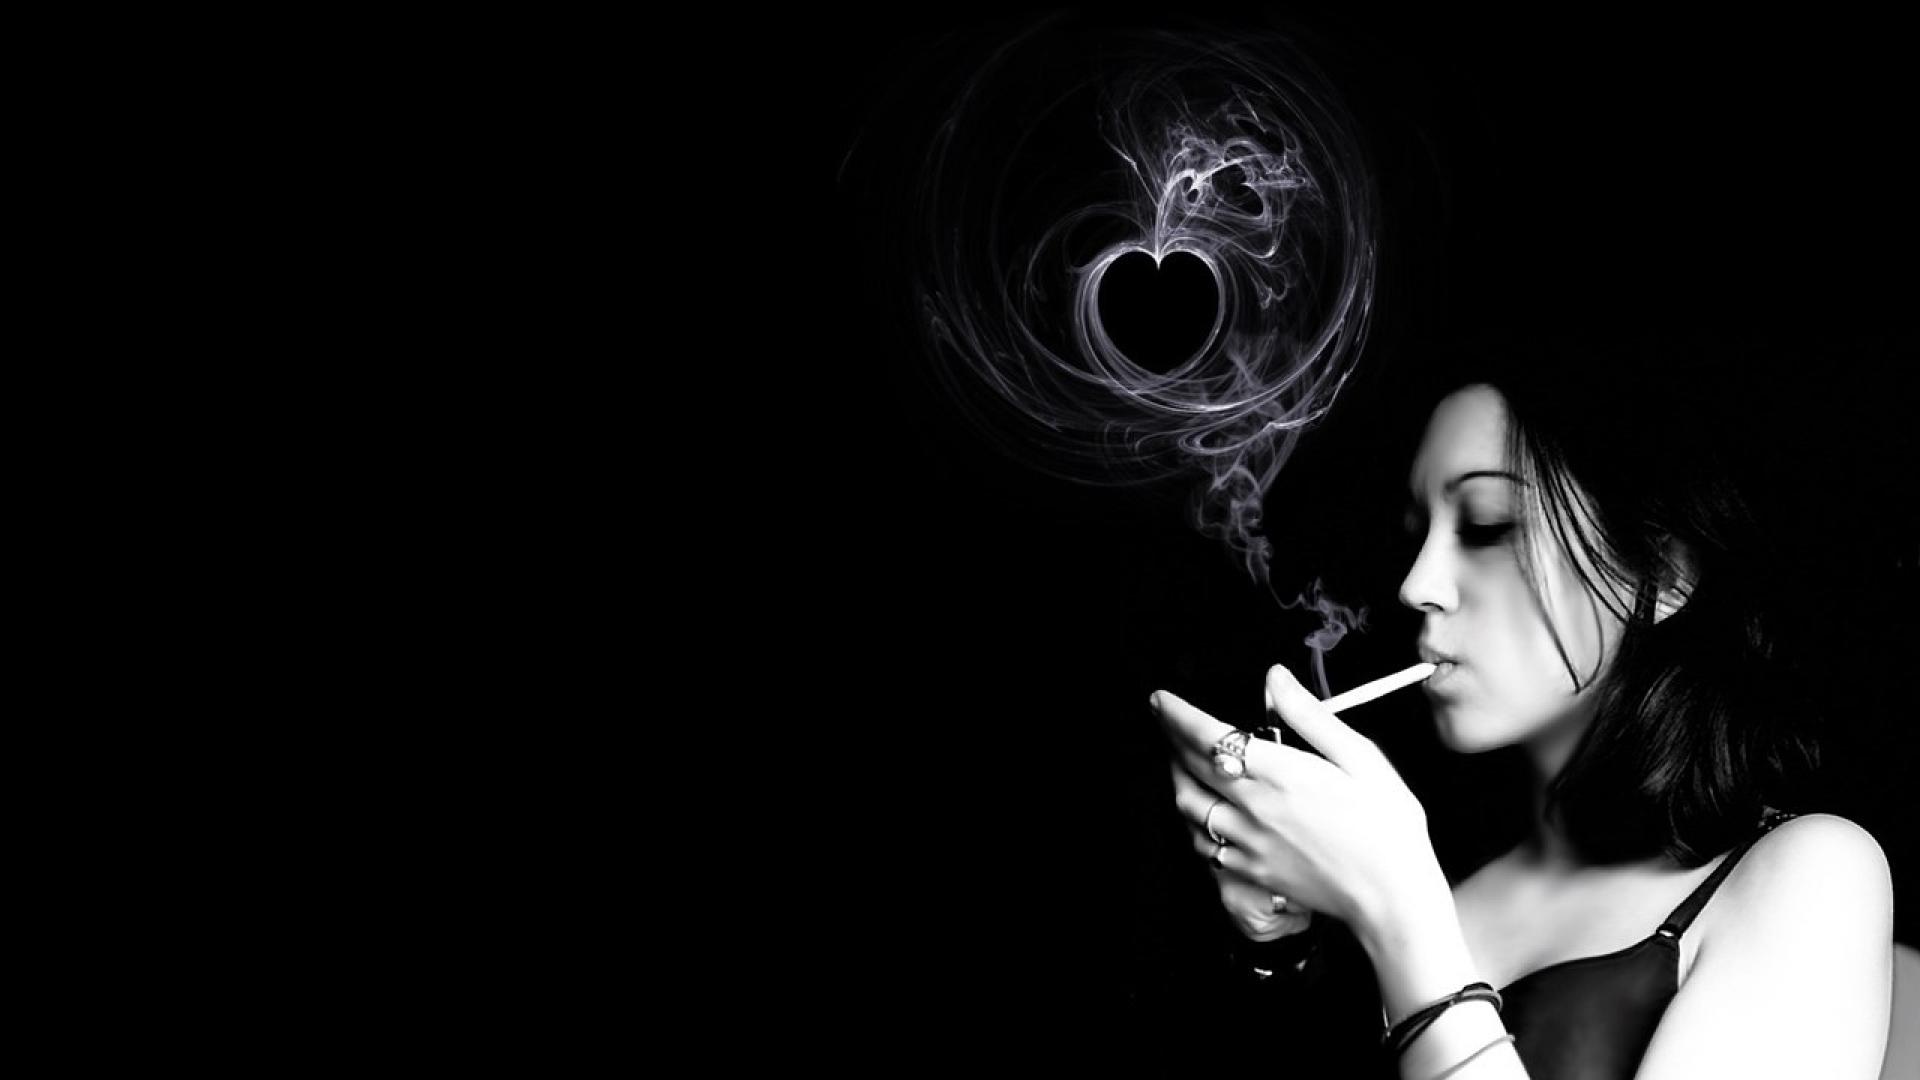 Top hình ảnh con gái hút thuốc cực chất, đầy tâm trạng - [Kích thước hình ảnh: 1920x1080 px]